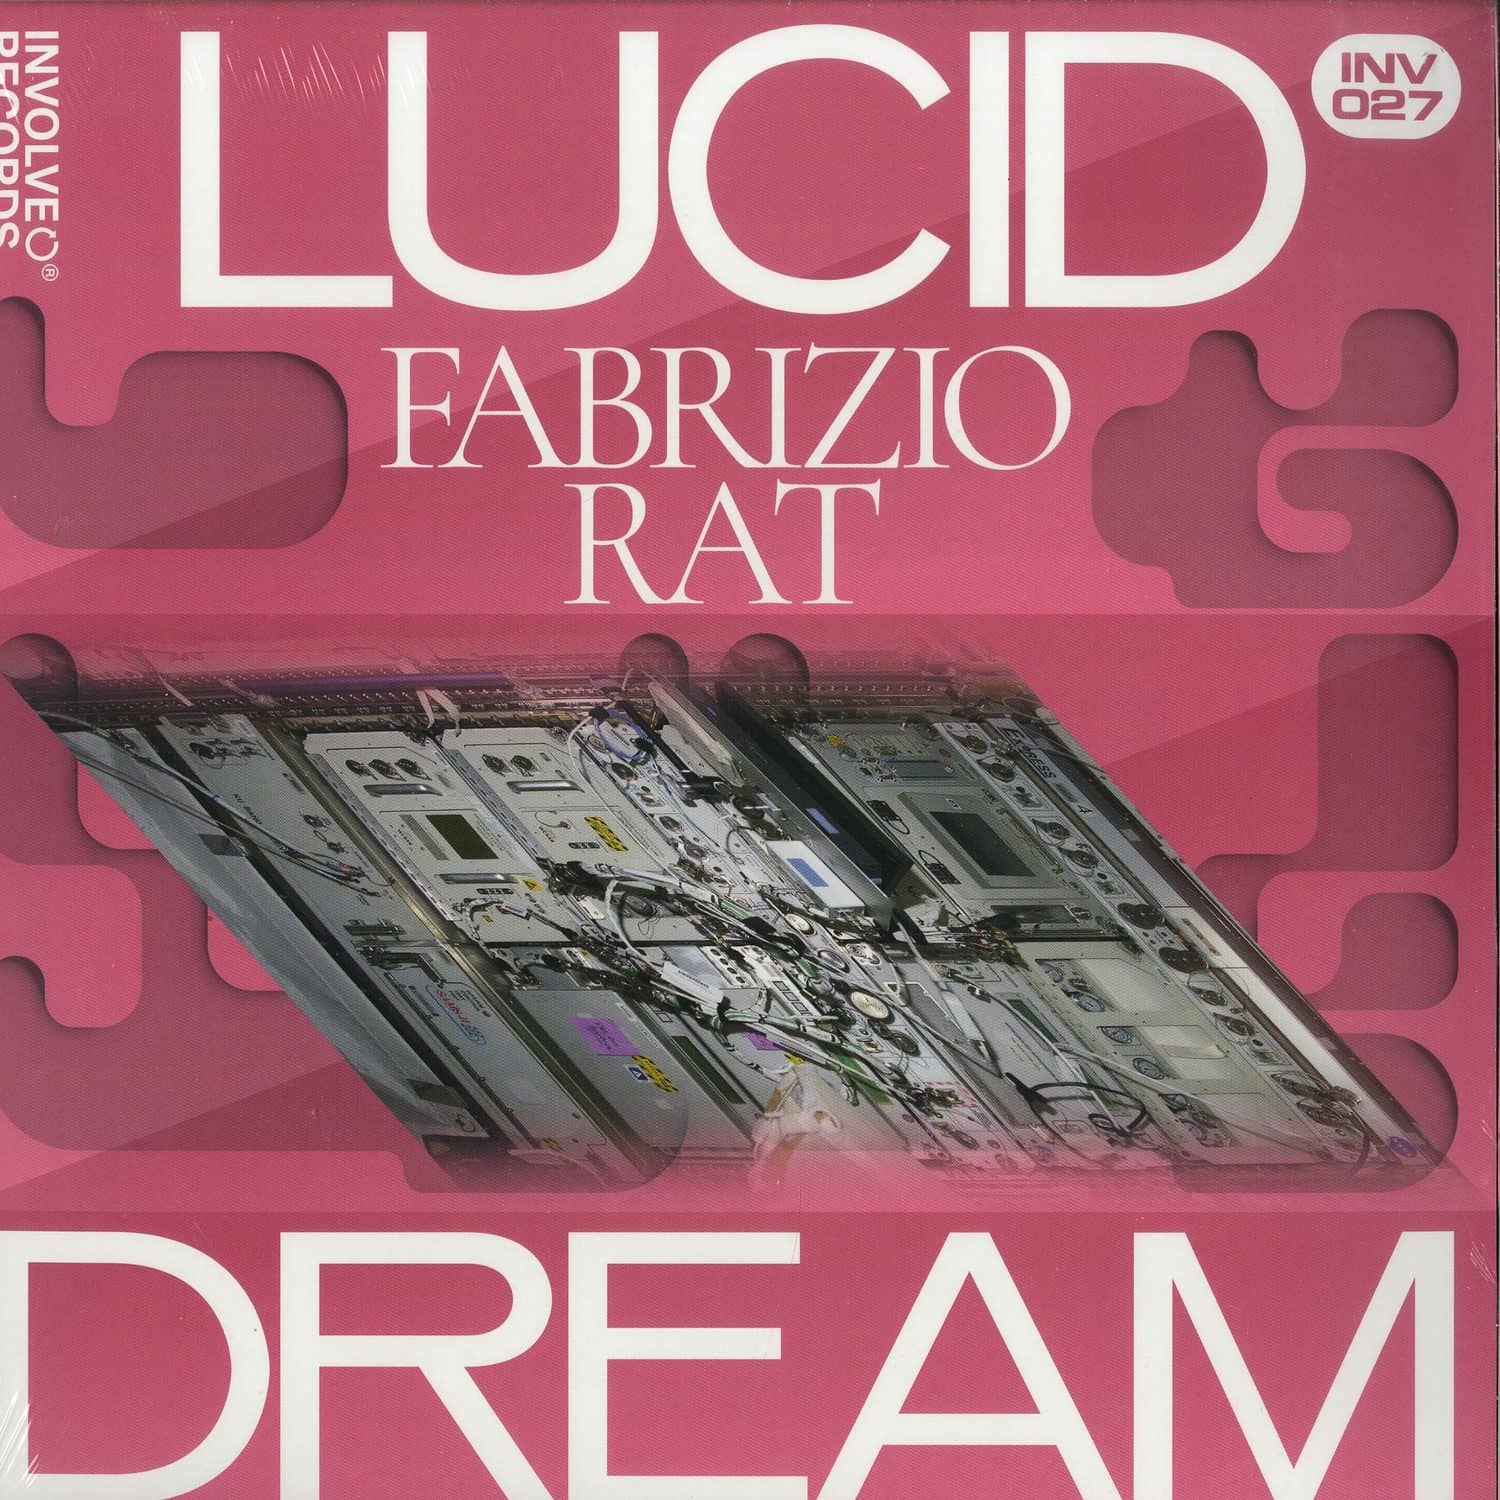 Fabrizio Rat - LUCID DREAM EP 